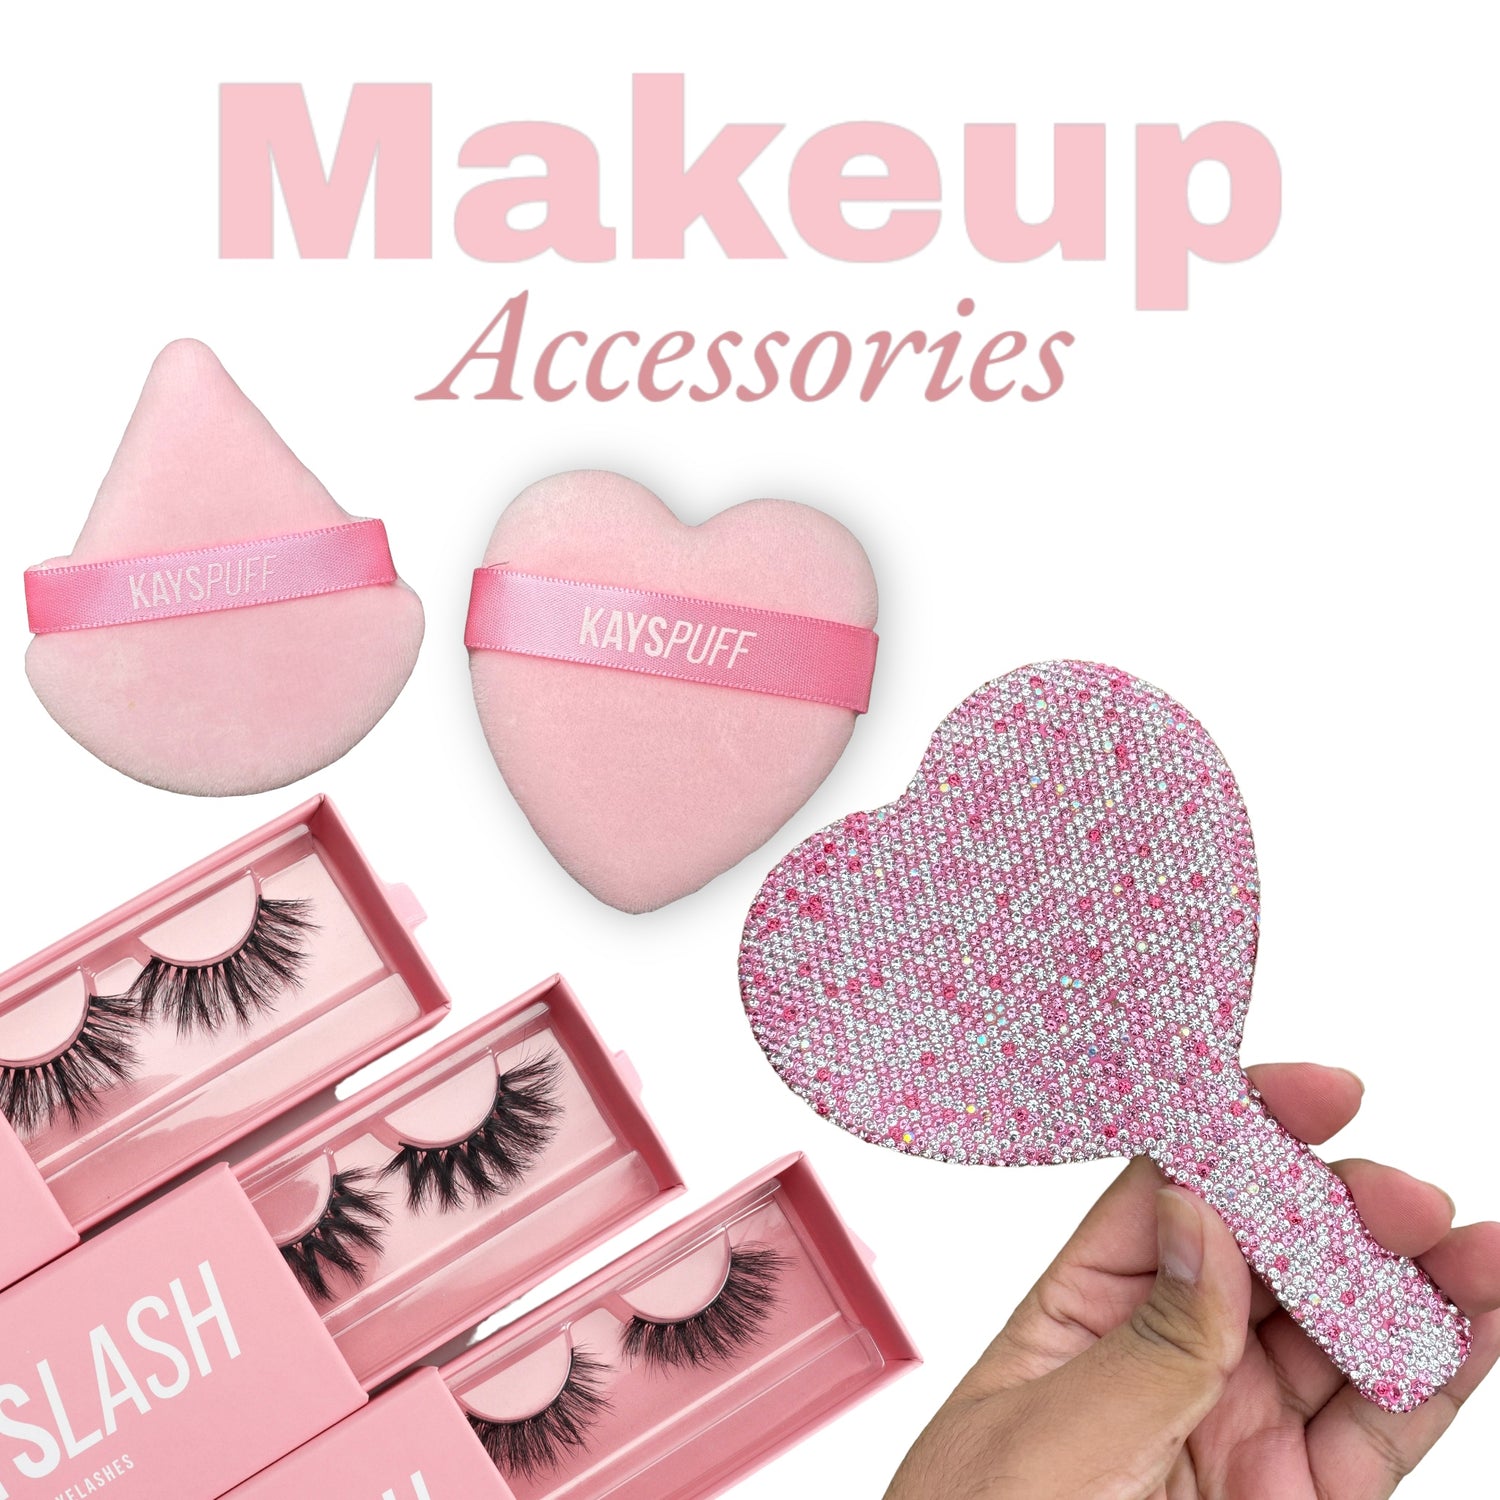 Makeup Accessories